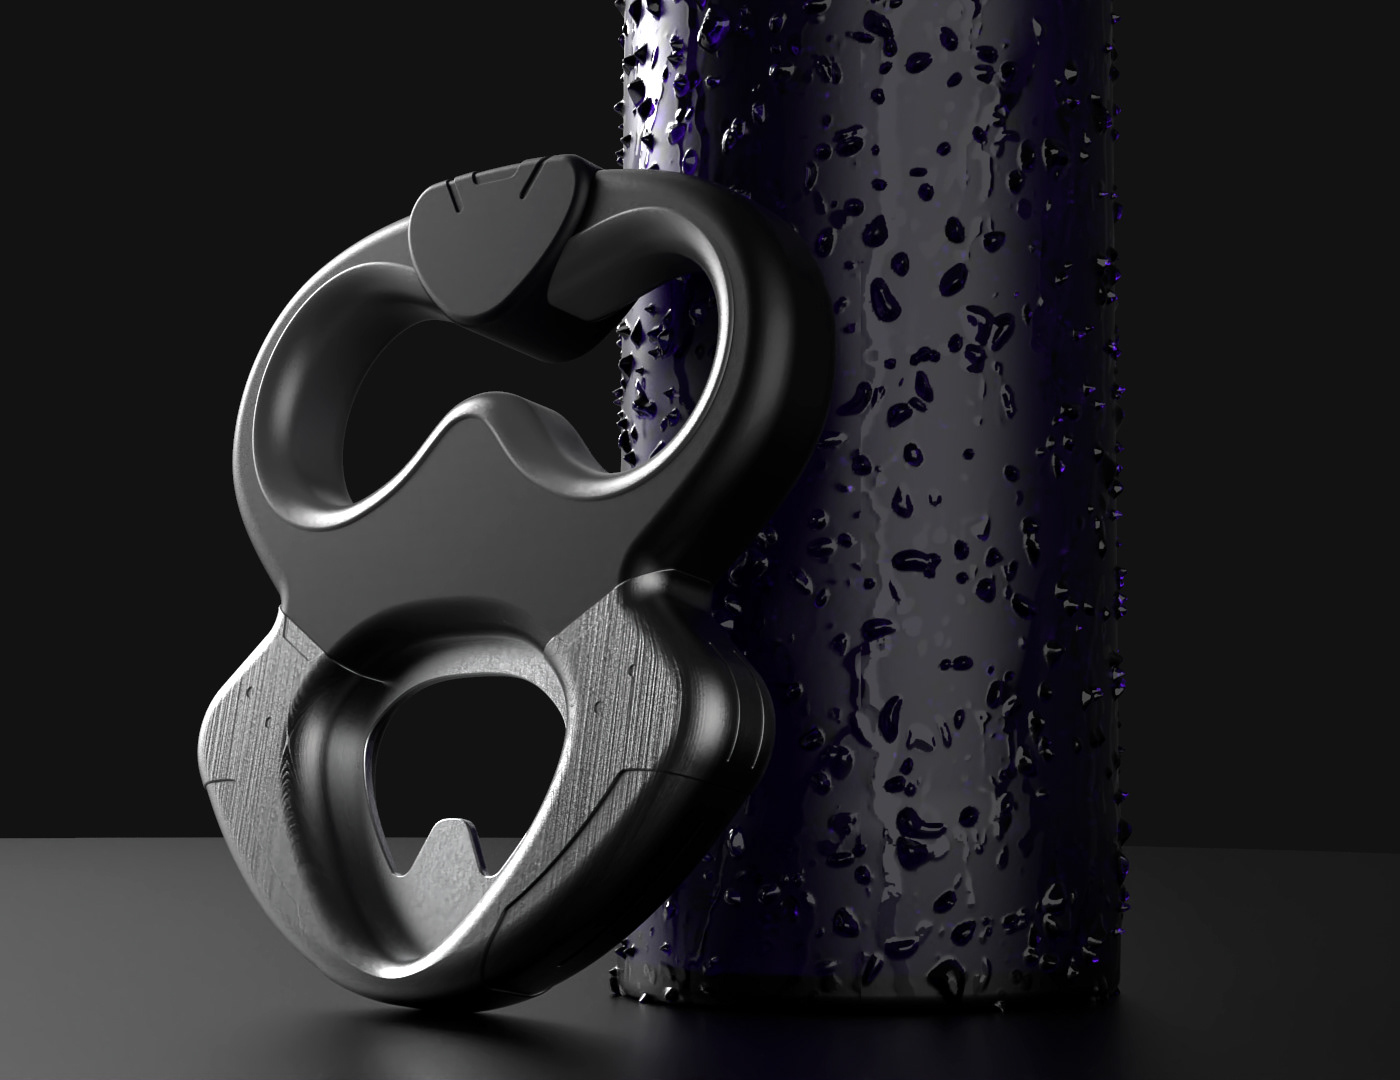 bar beer bottle coke design drink opener product tool ergonomy